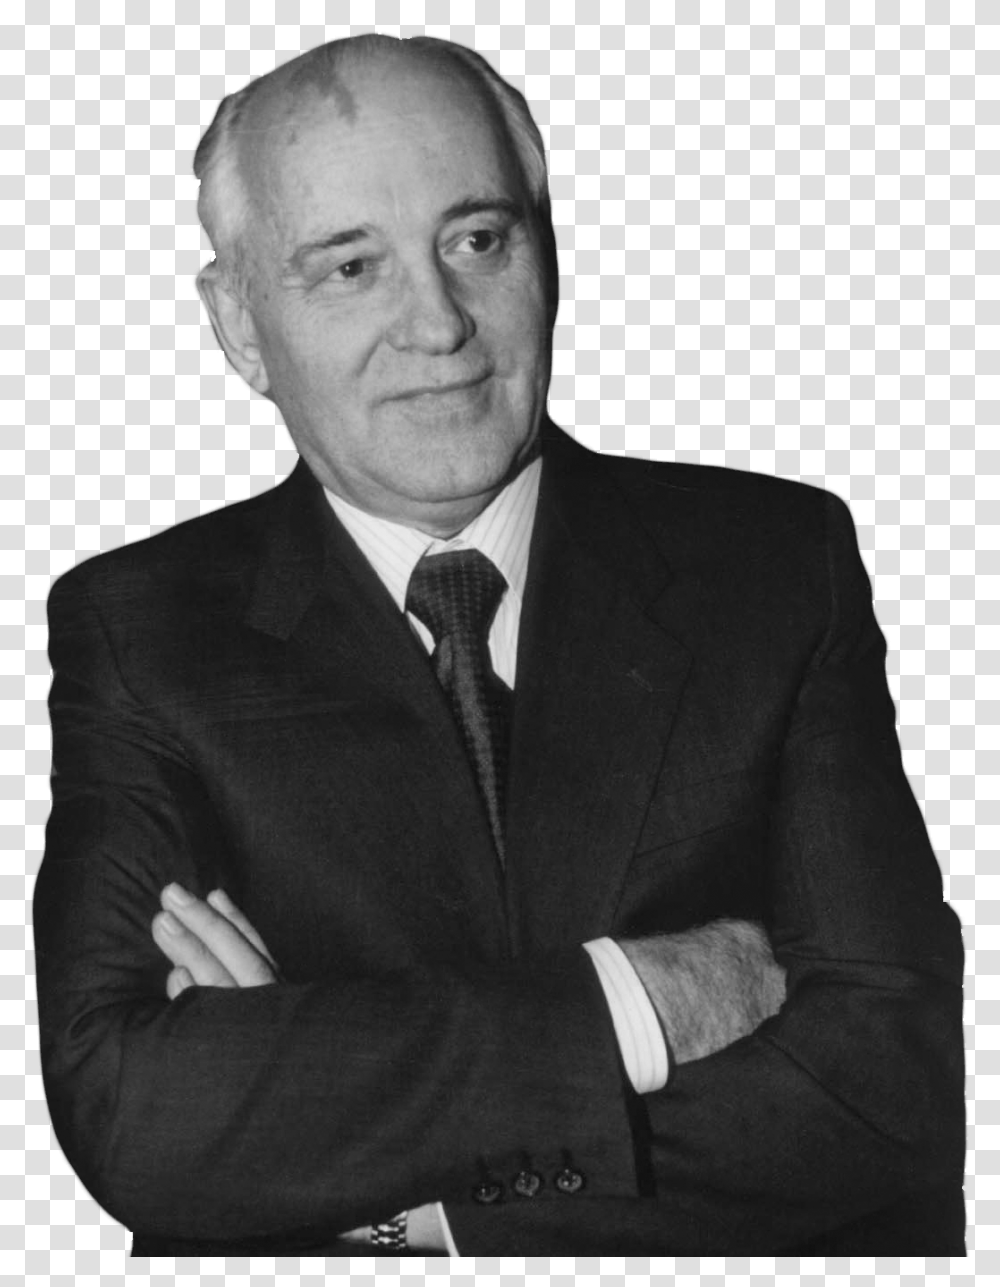 Gorbachev, Celebrity, Tie, Accessories, Suit Transparent Png